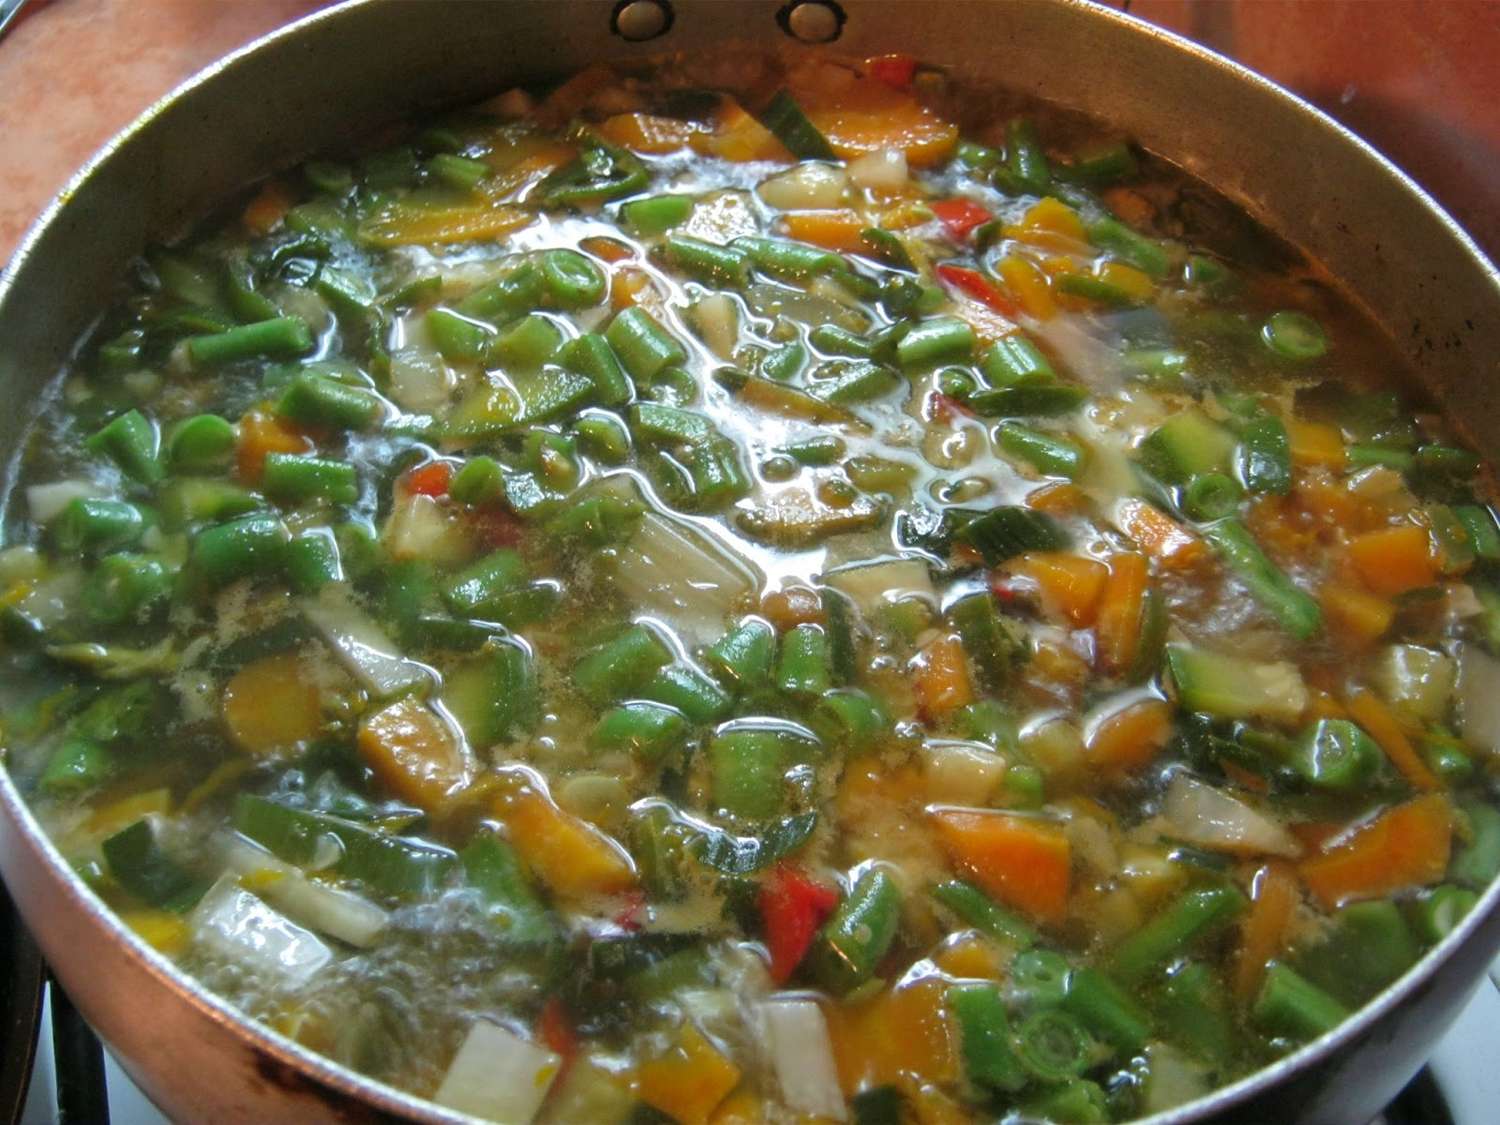 Receta para preparar una rica sopa de pollo con verduras